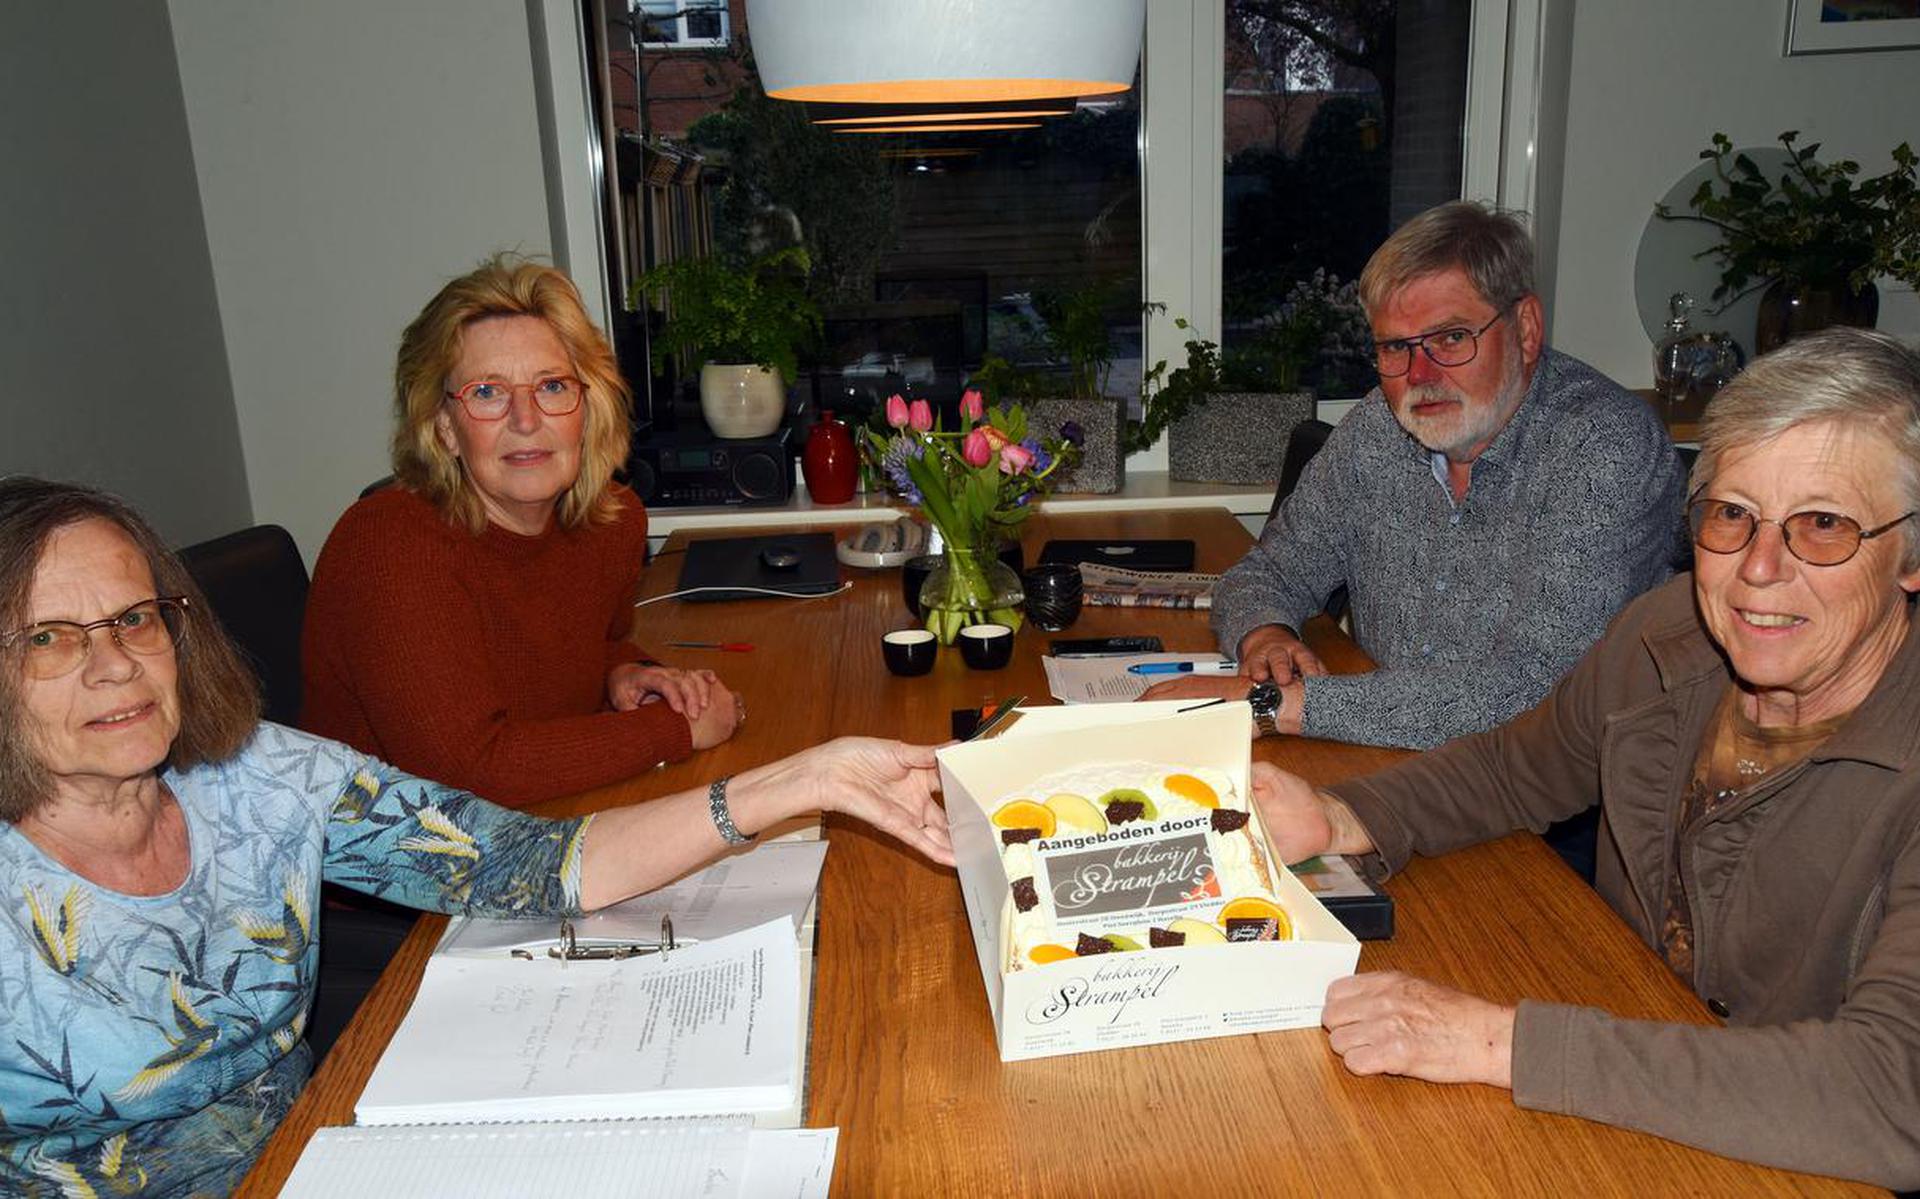 Bestuursleden Janny de Vries, Joke van der Heide, Gert Veld en Linda Wibbelink zijn blij verrast met de taart. 